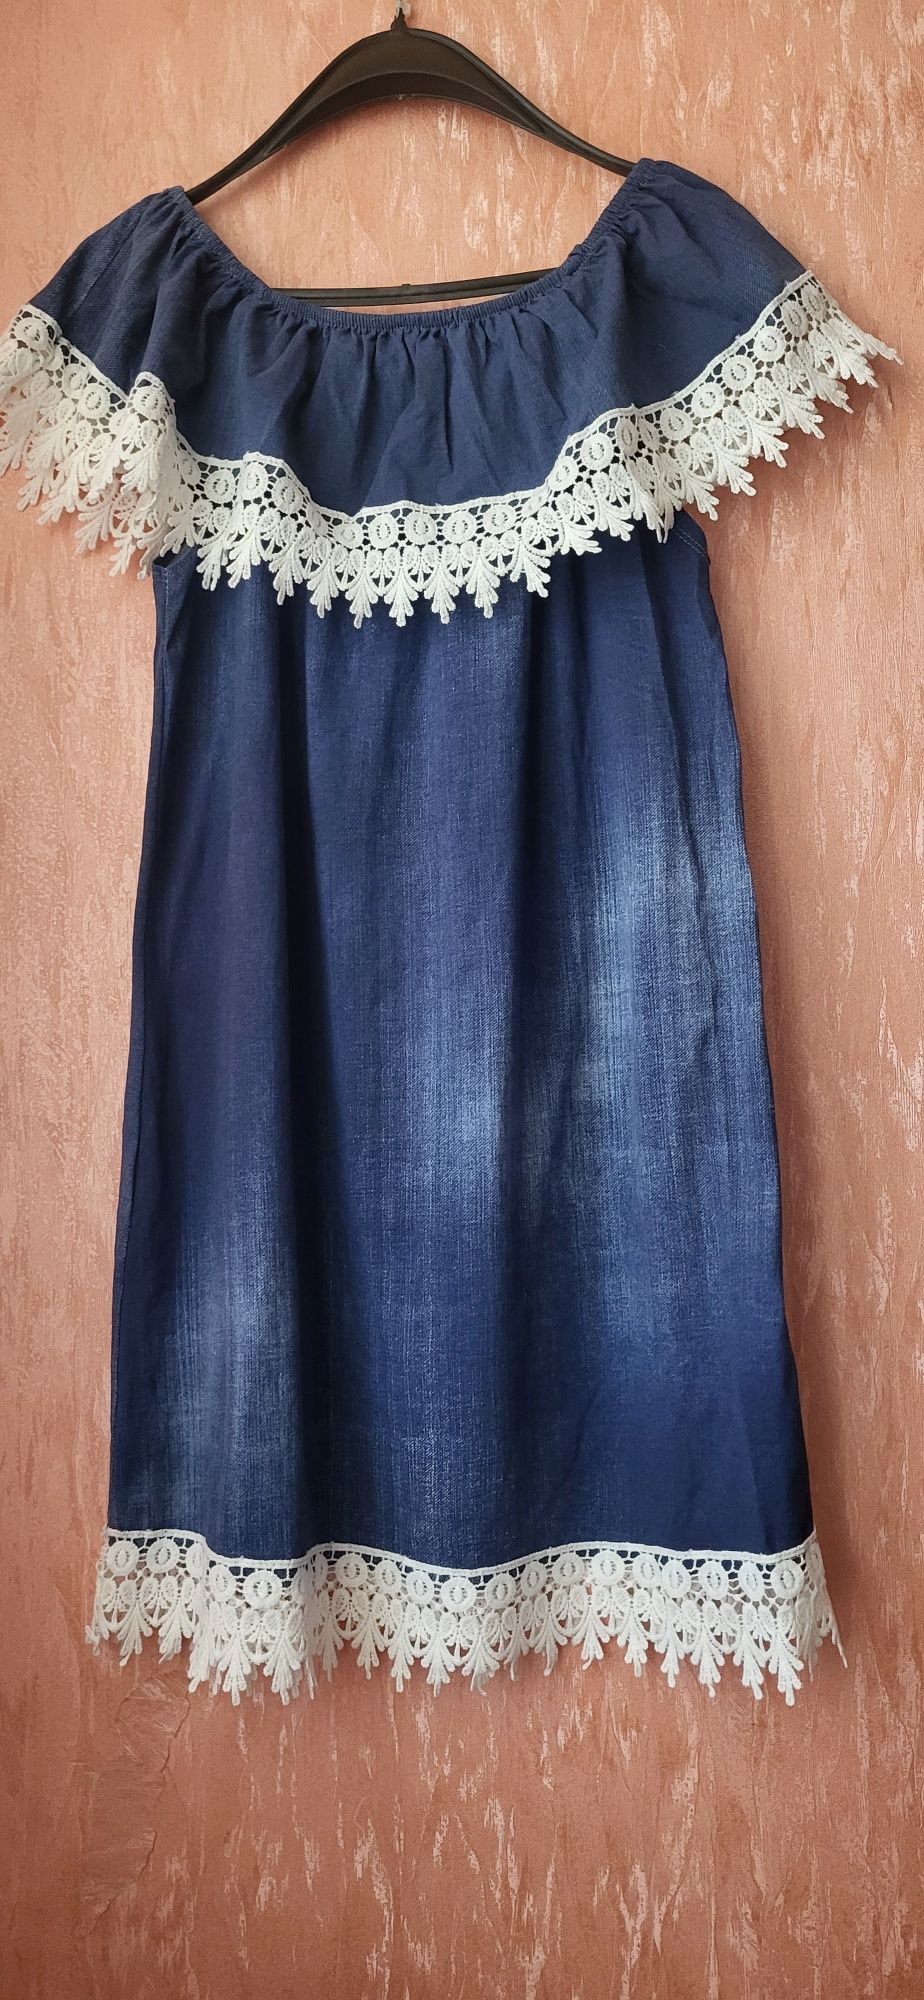 Платье сарафан с кружевом трикотаж деним ,,под джинс,, L-XL